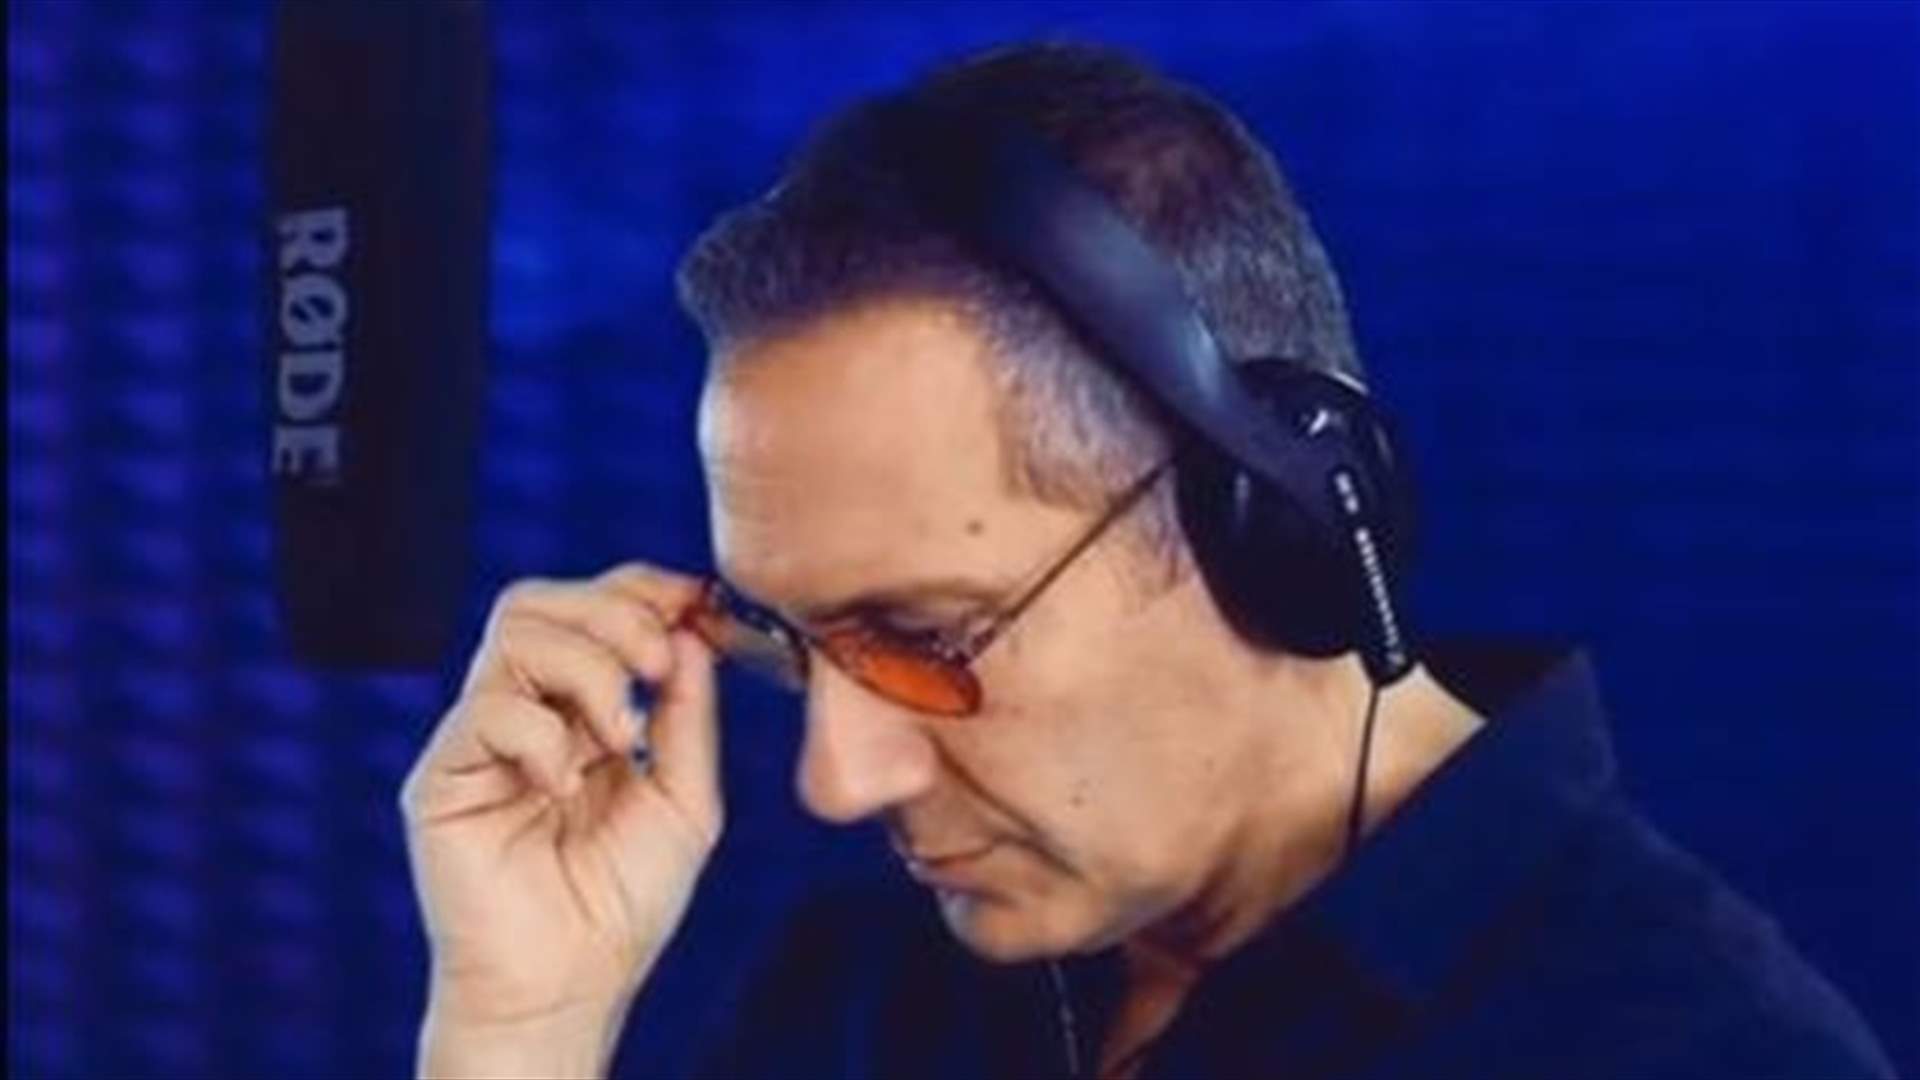 طوني أبو جودة يحصد ملايين المشاهدات... قلّد أصوات نجوم الثمانينيات بموهبته الإستثنائيّة (فيديو)